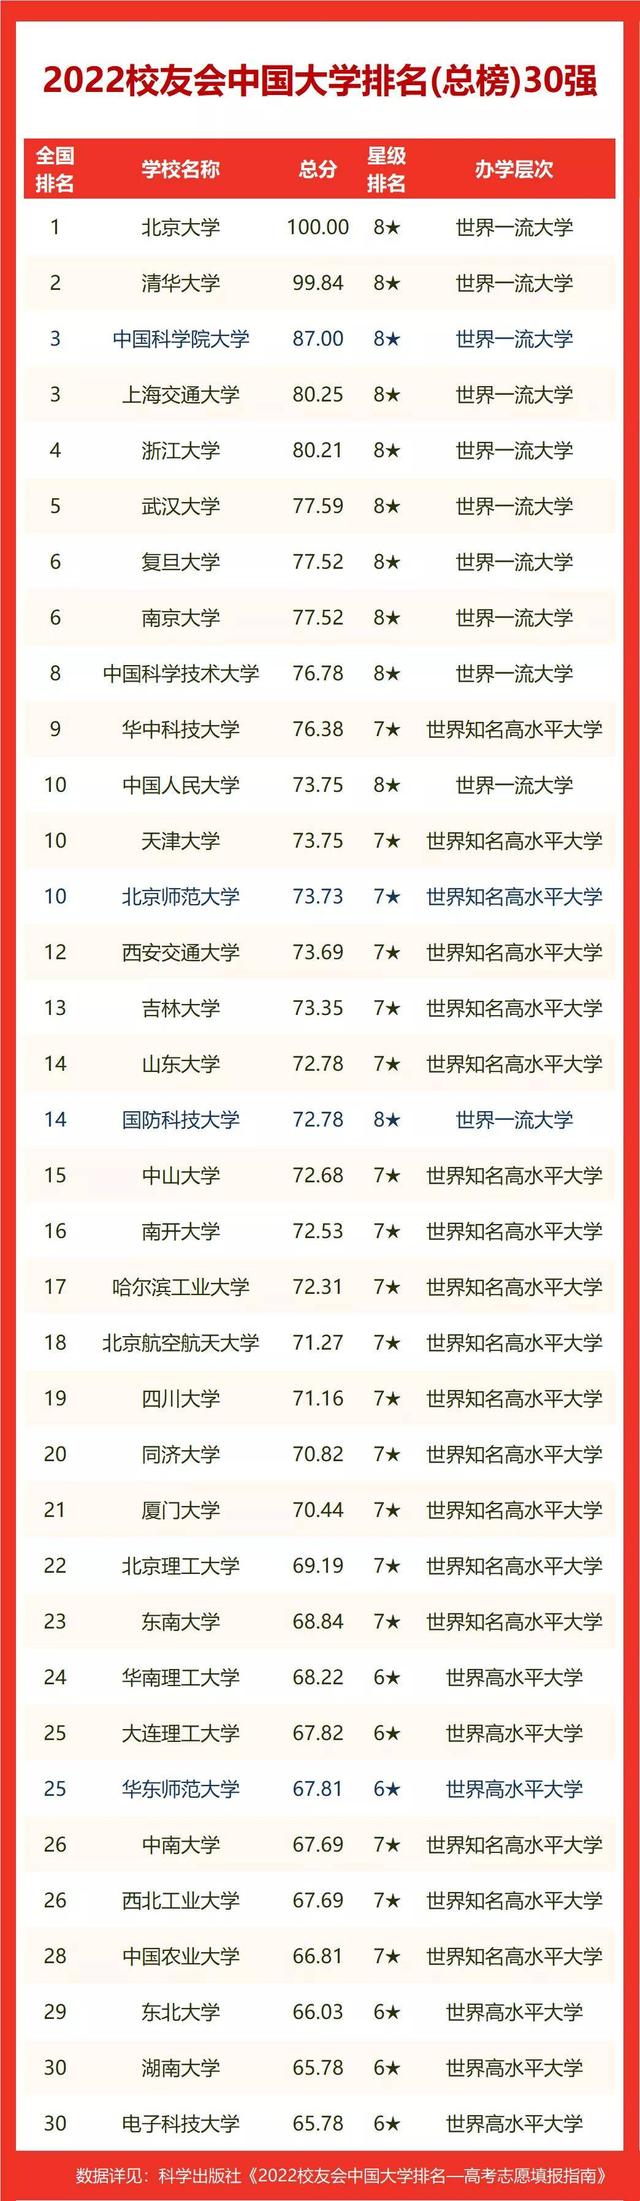 中国十大电力大学排名(中国电力学院排名)插图4